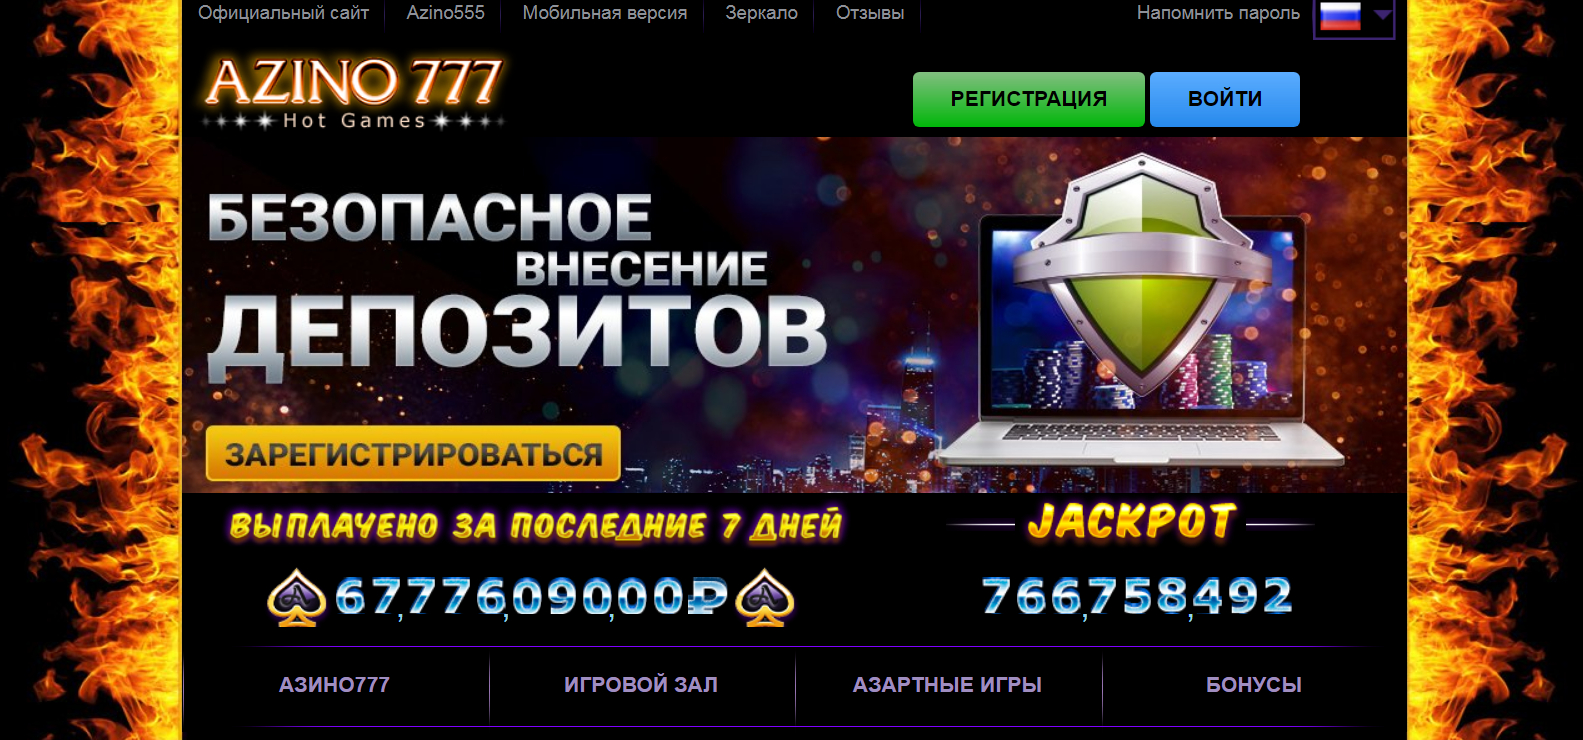 Казино 777 мобильная версия регистрация крупные выигрыши в игровые автоматы видео